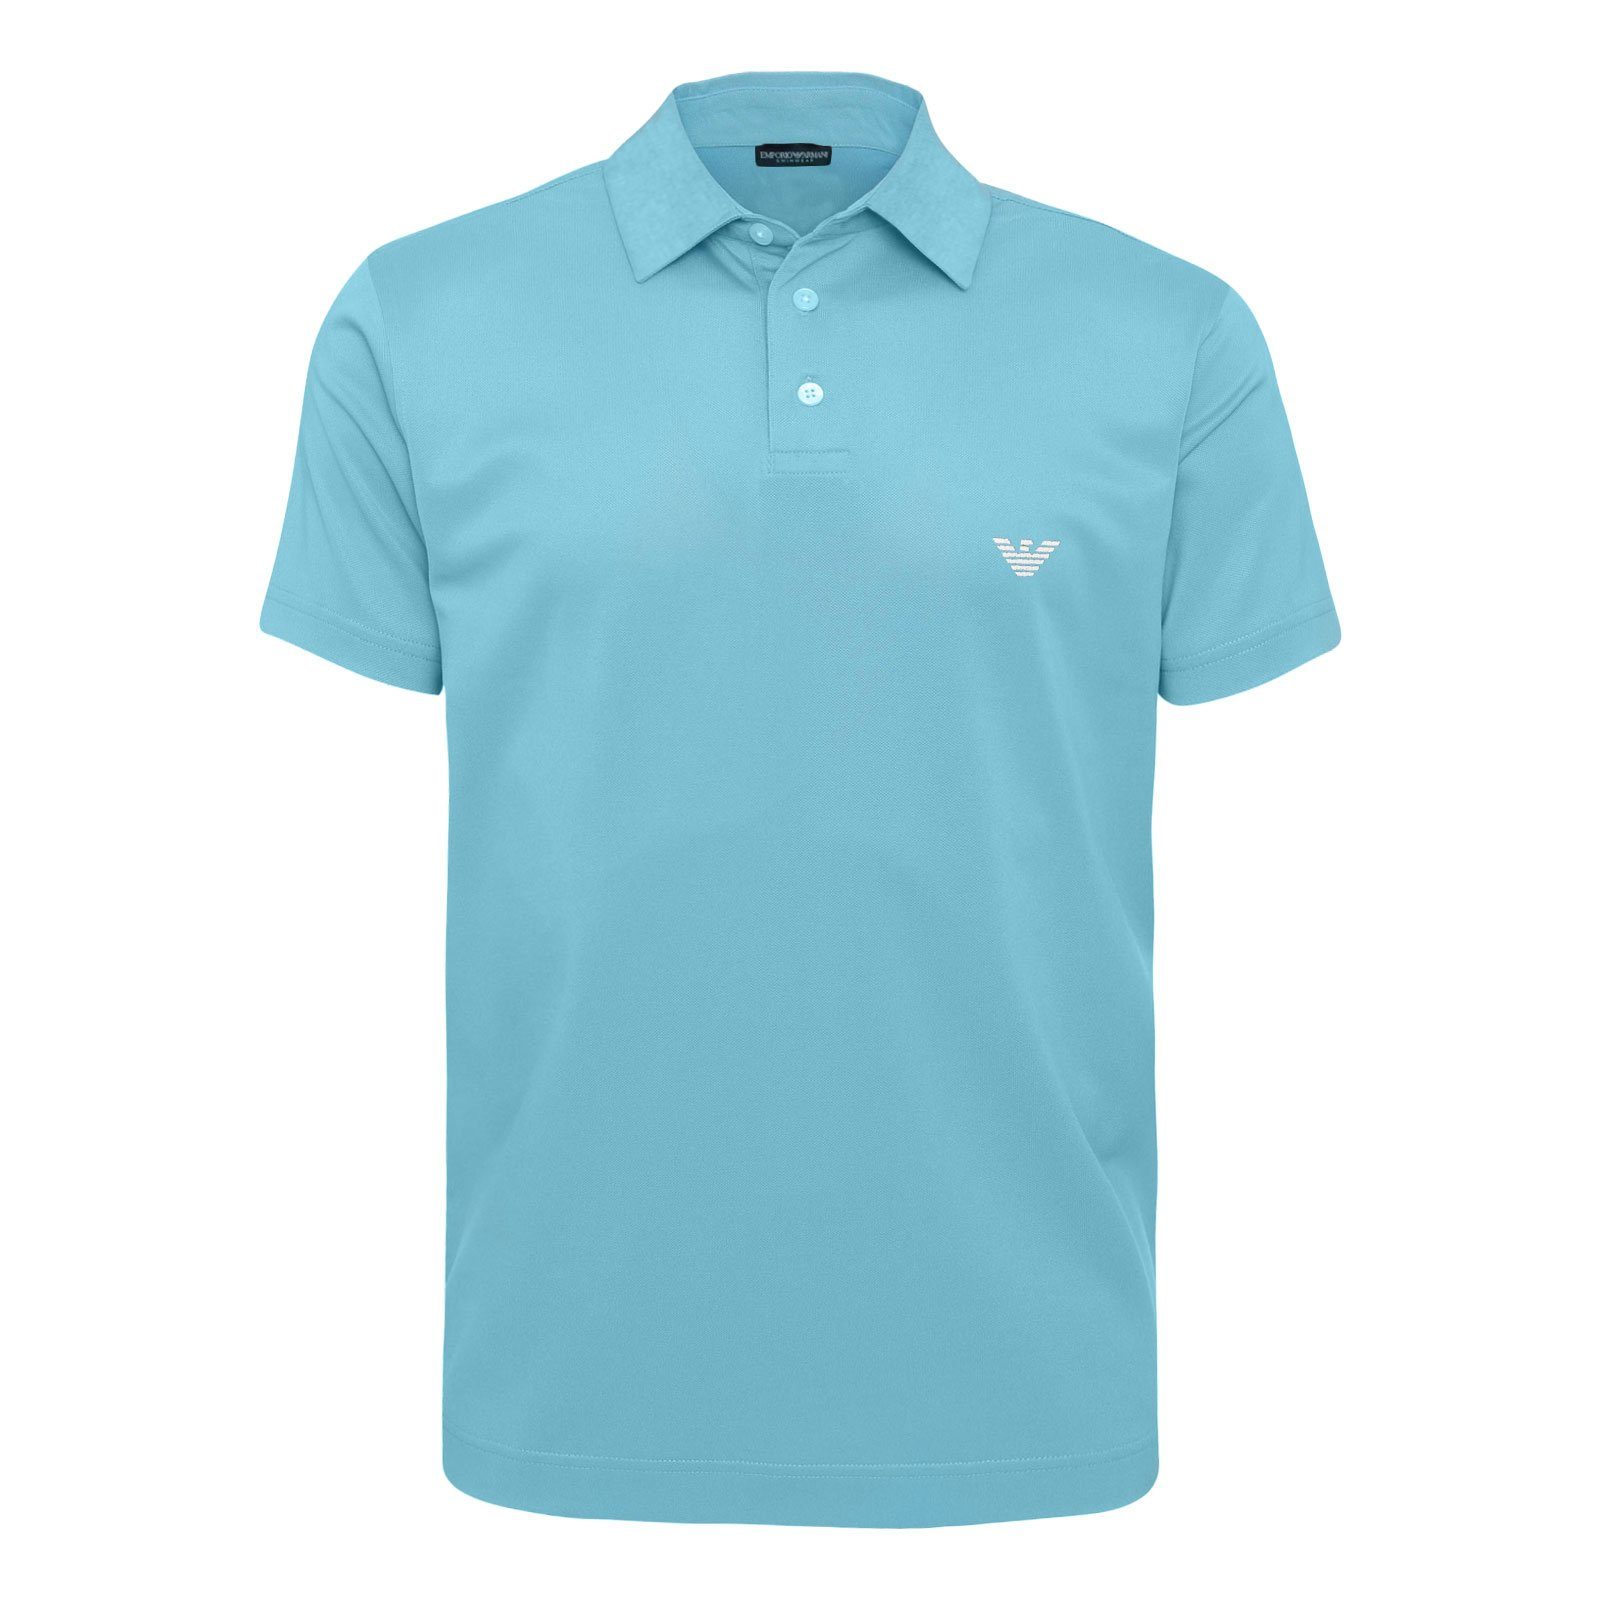 Emporio Armani Poloshirt Polo Beachwear Logostickerei 00031 kleiner sky blue mit